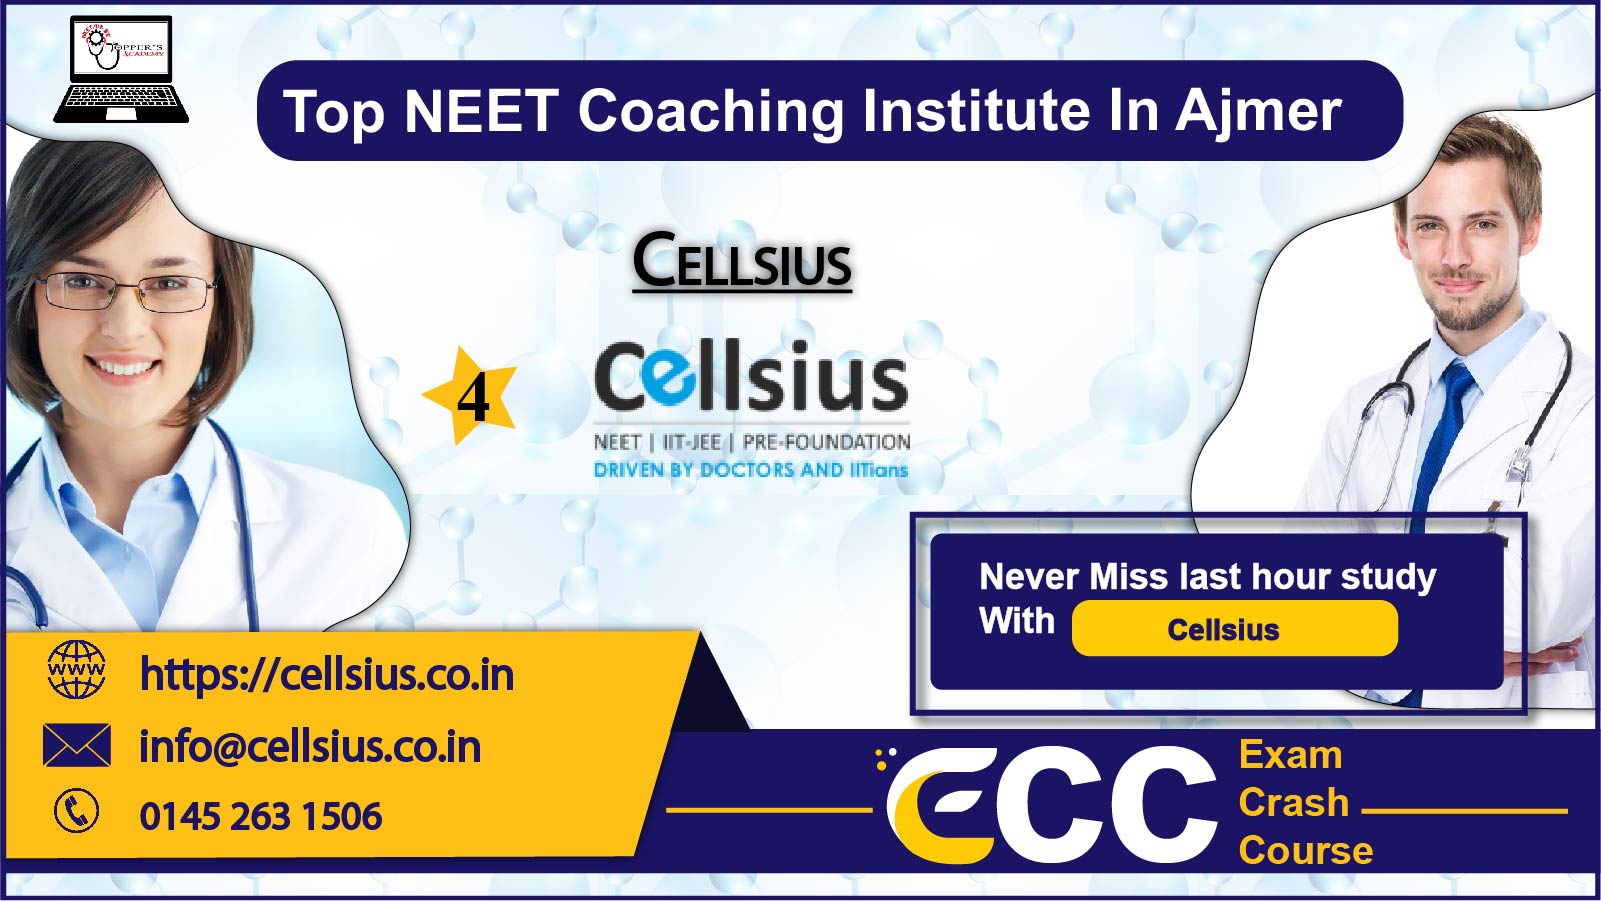 Cellsius NEET Coaching in Ajmer